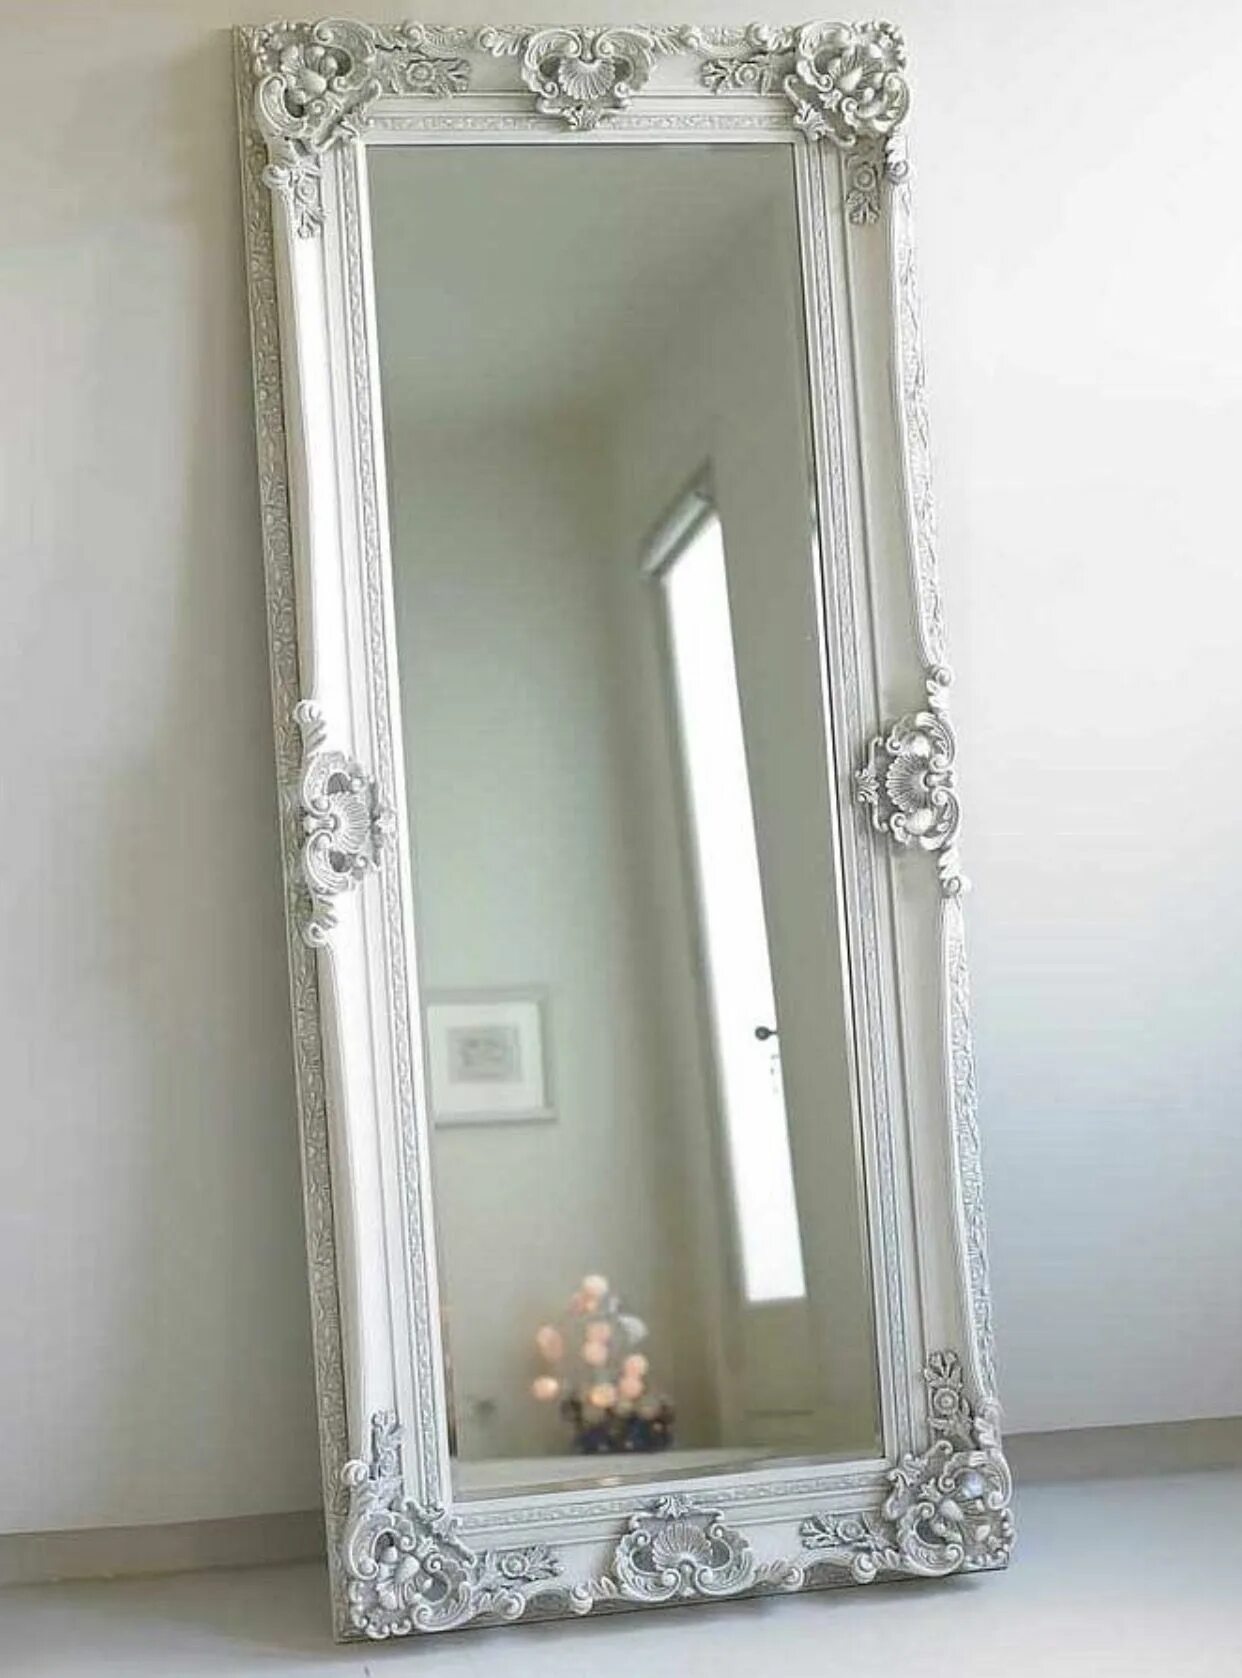 Напольное зеркало Лоренцо Soho Silver. Напольное зеркало Венето Florentine Silver/19. Рамка для зеркала. Зеркало настенное в раме. Купить зеркало в смоленске